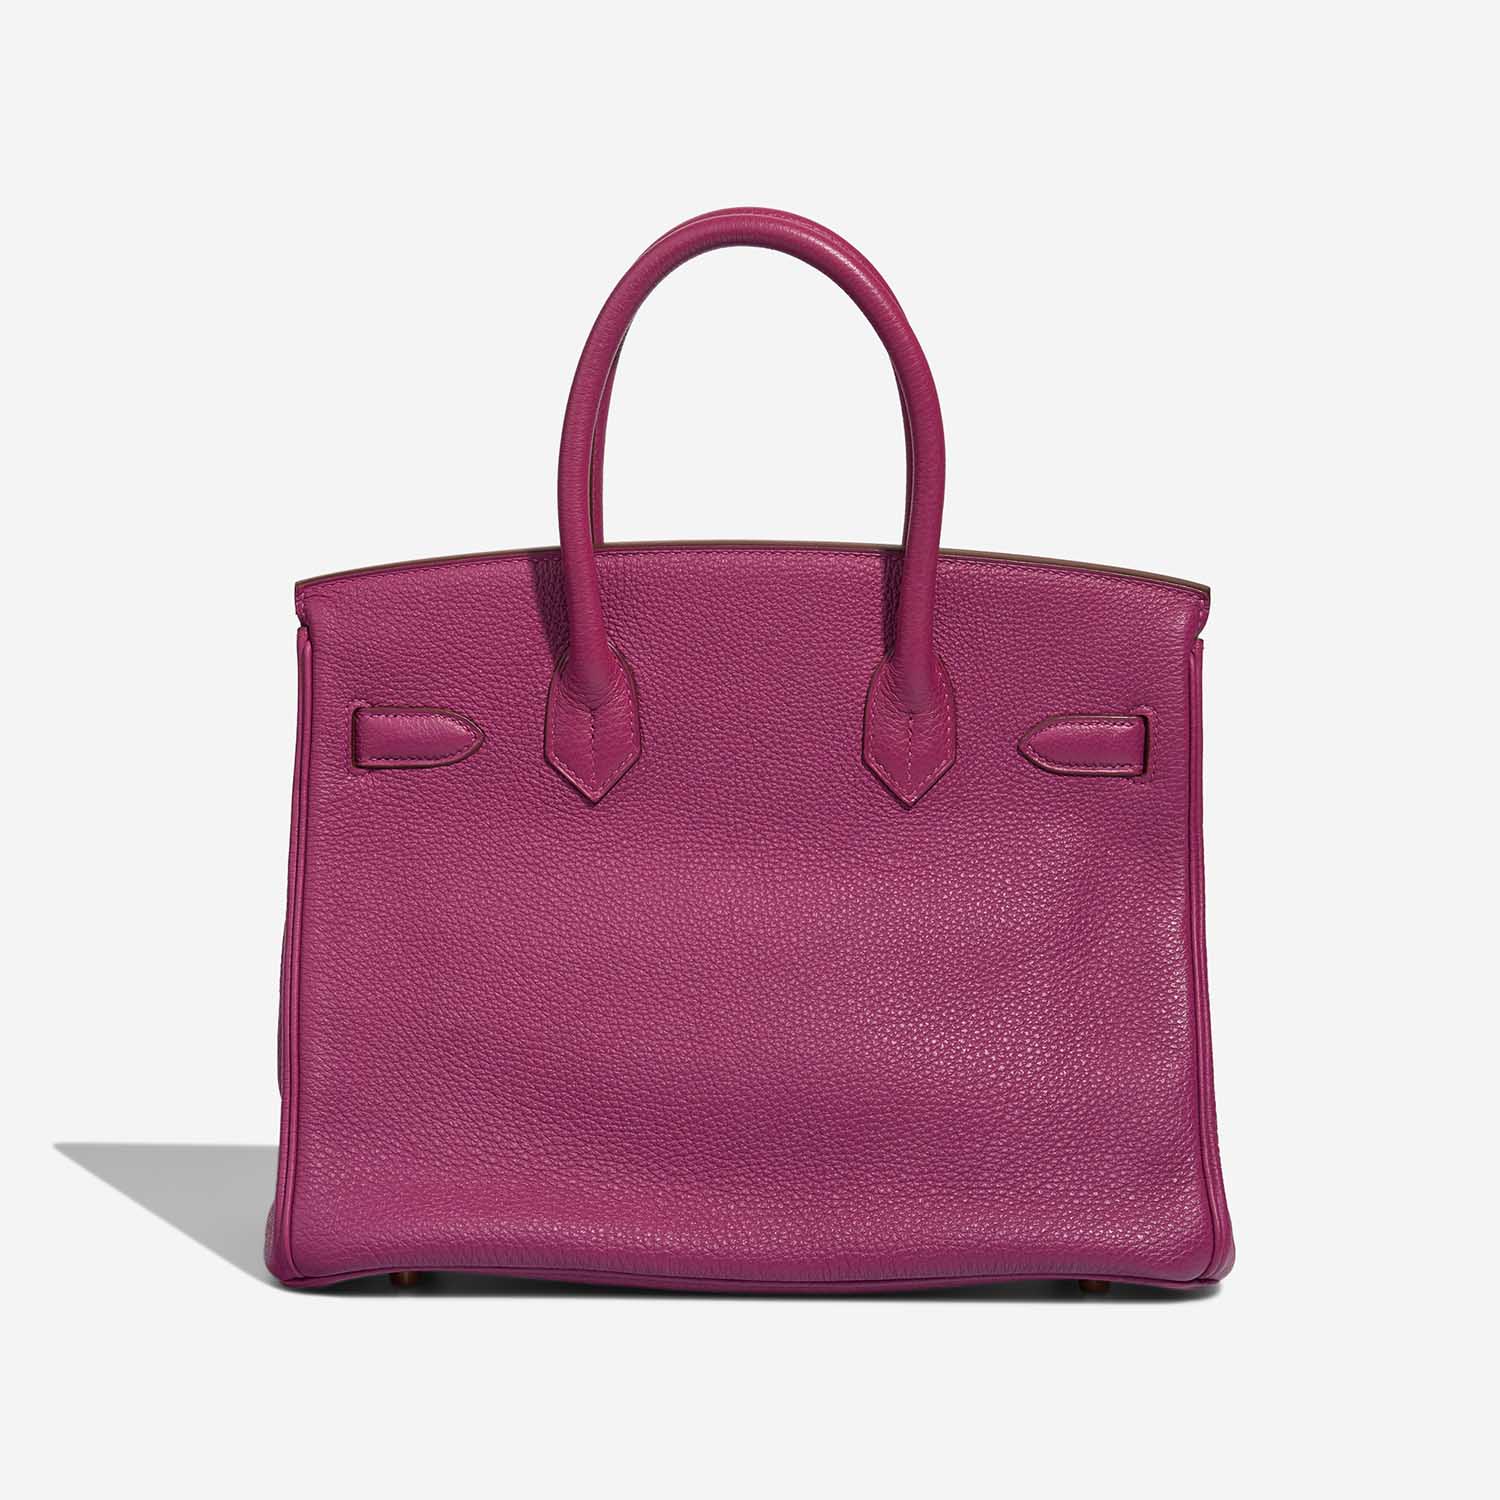 Hermès Birkin 30 Tosca Back | Verkaufen Sie Ihre Designertasche auf Saclab.com